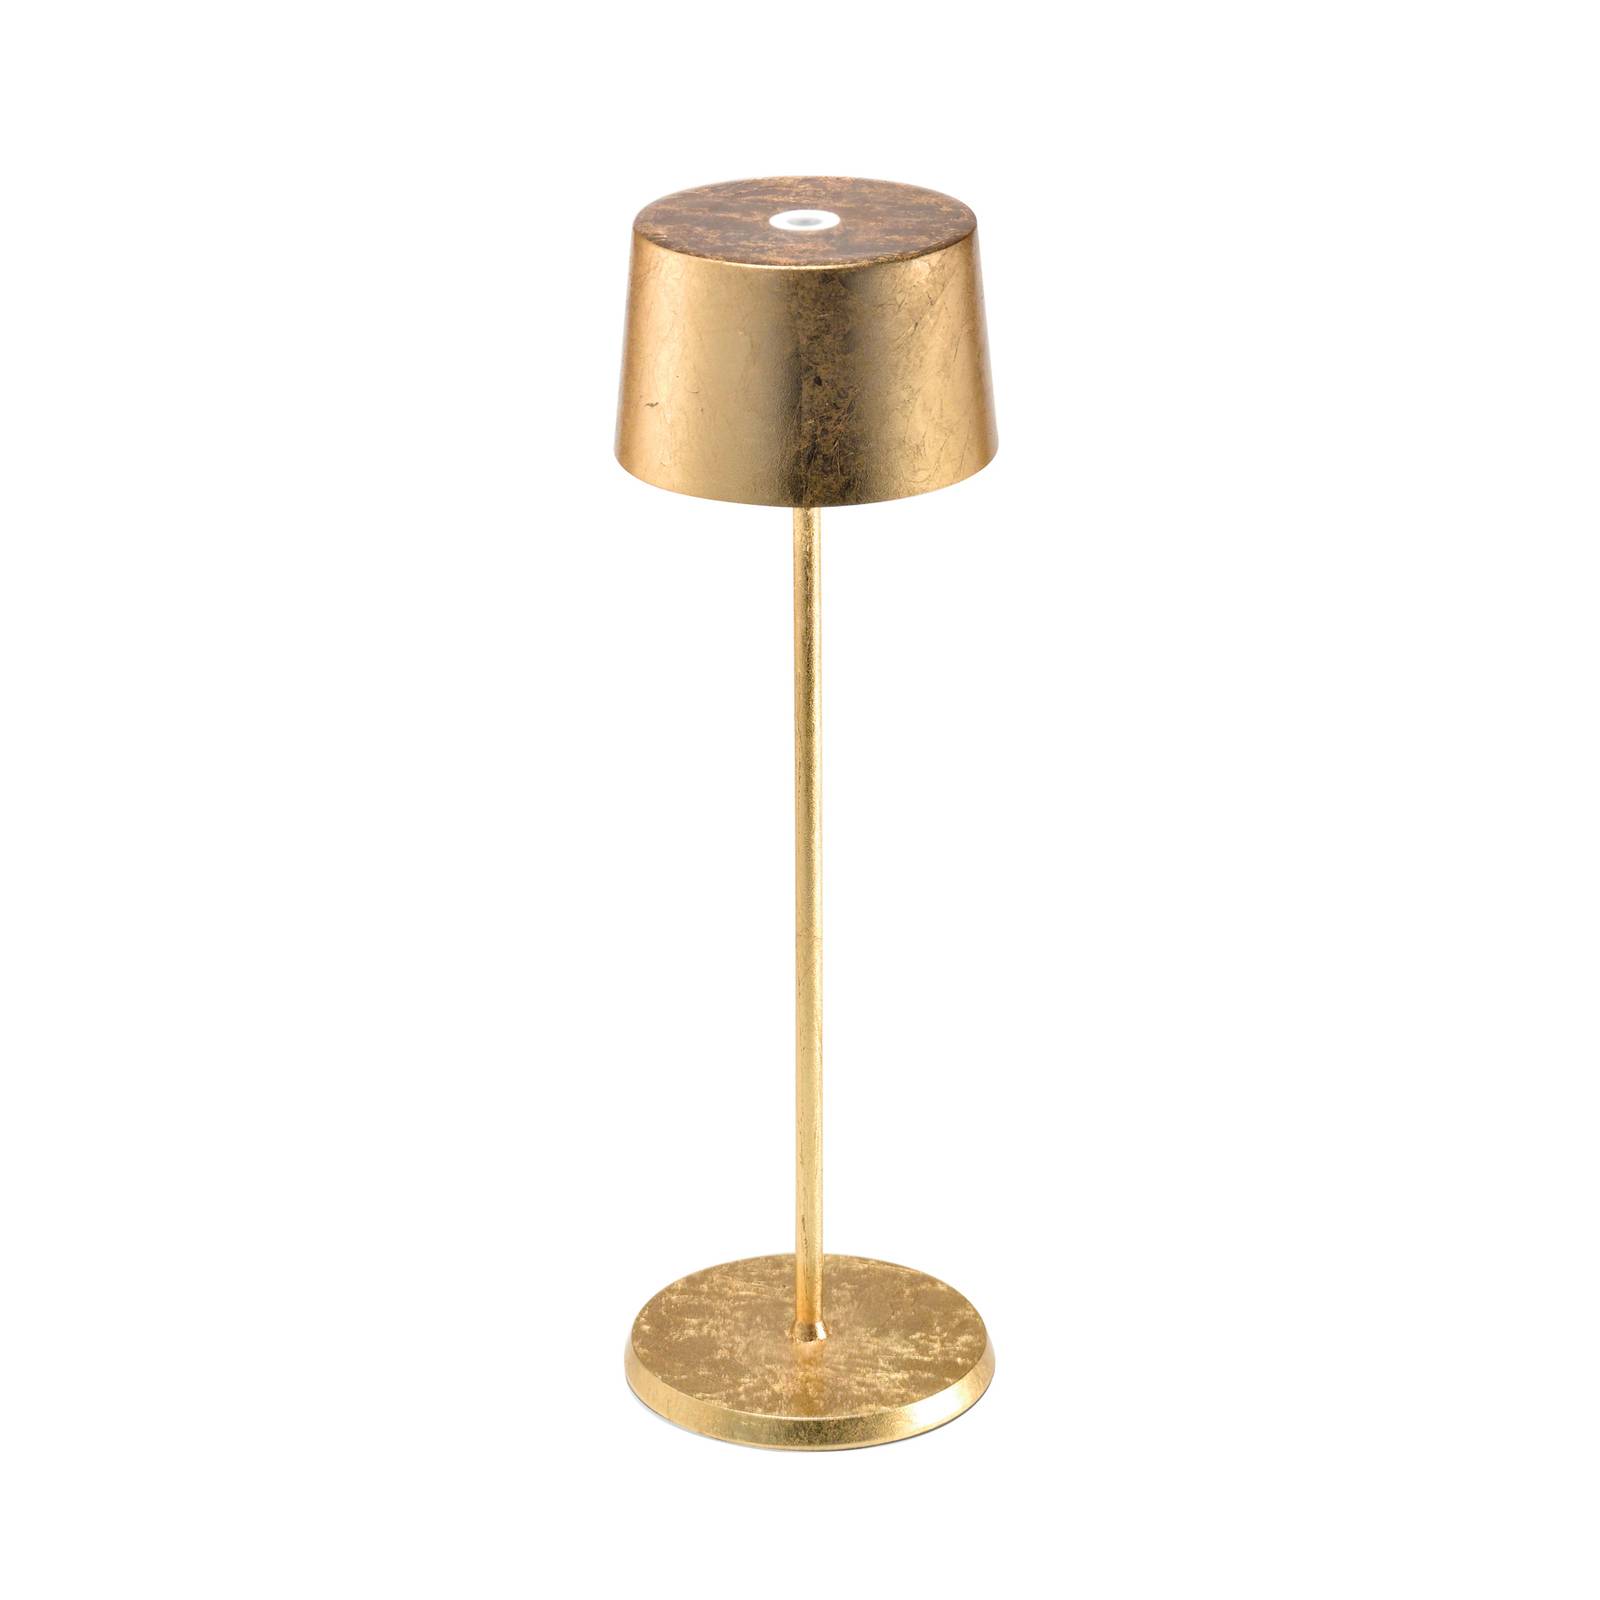 Zafferano olivia 3k újratölthető asztali lámpa arany színben